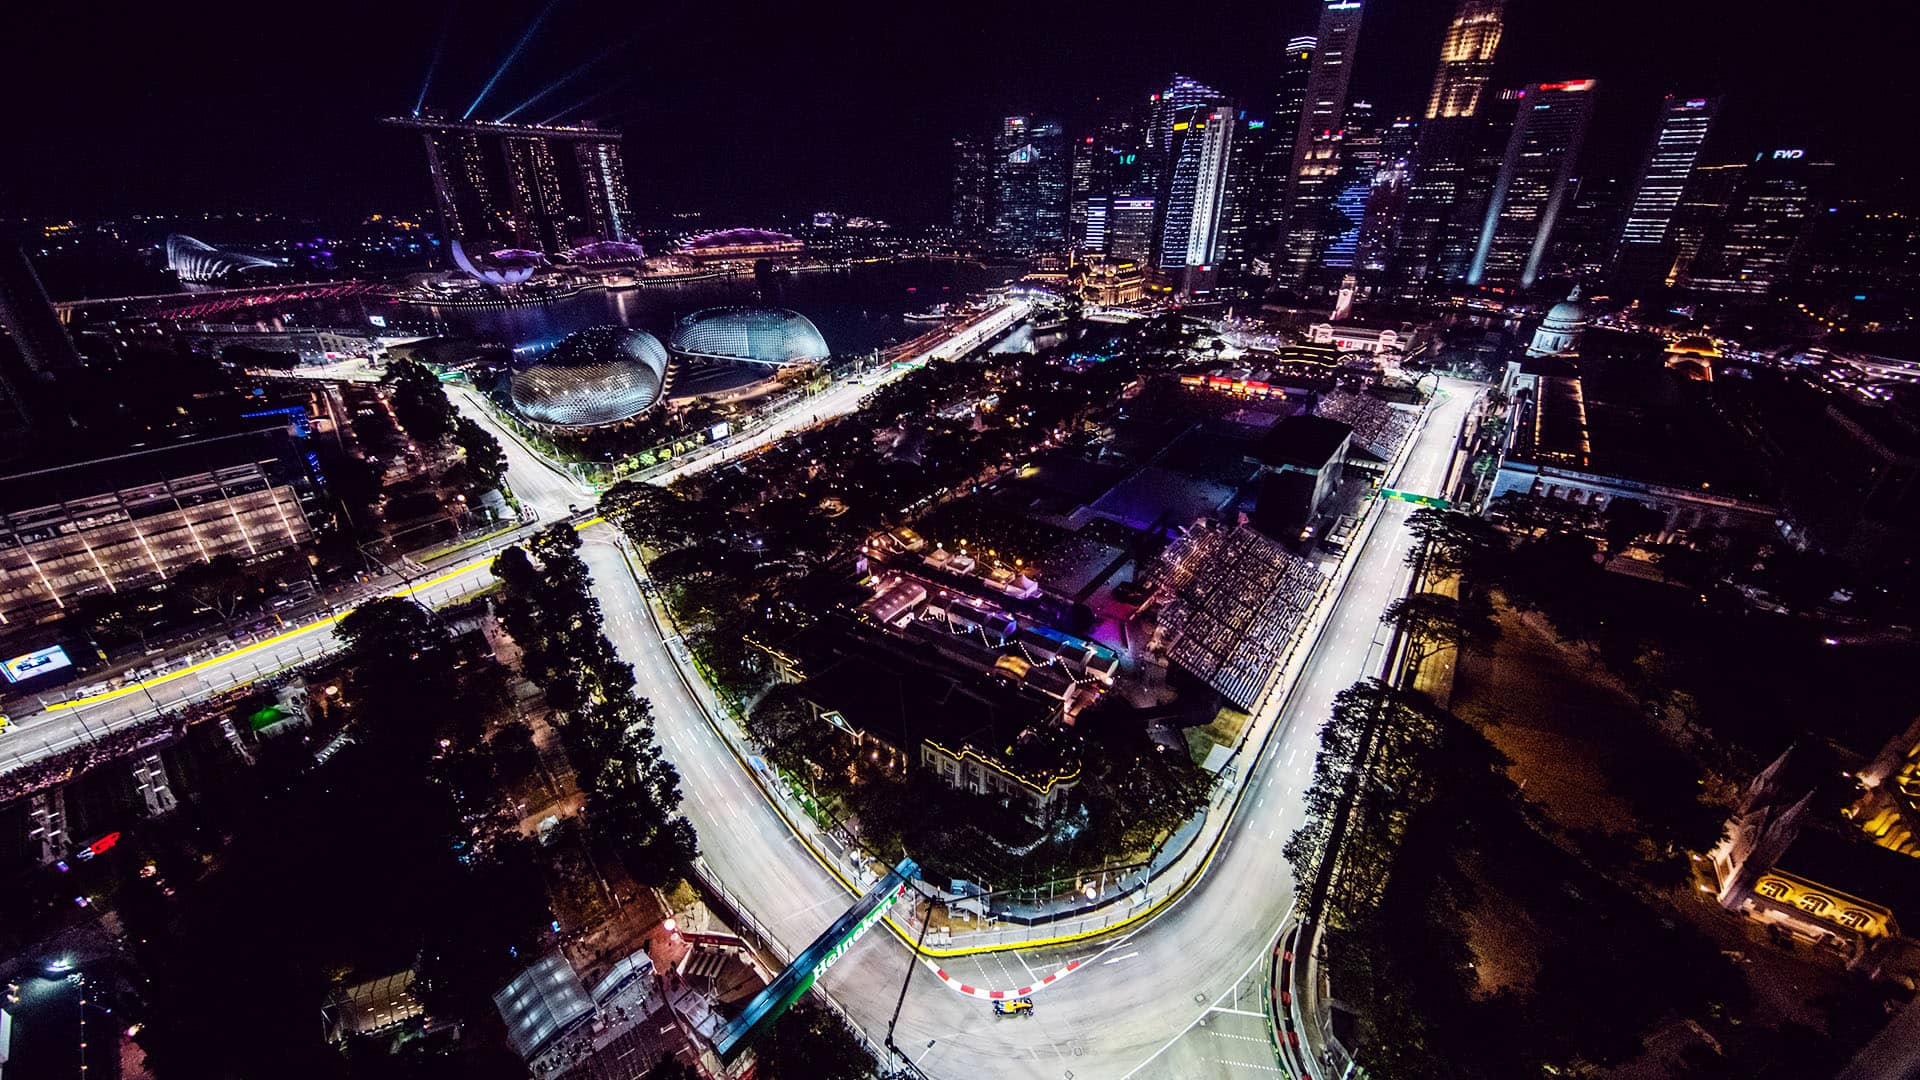 Singapore by night.